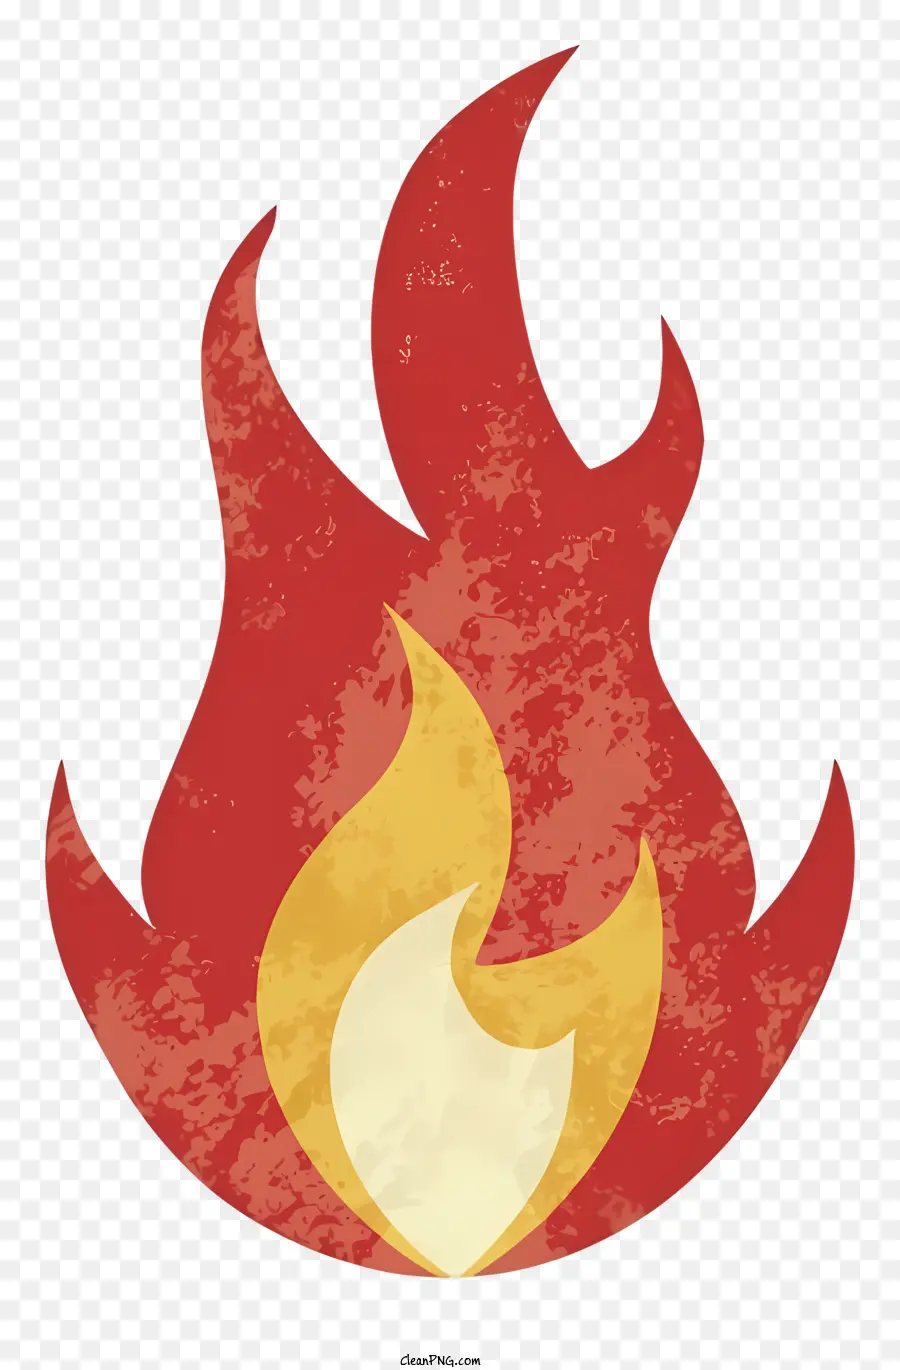 nền trắng - Hình ảnh biểu tượng lửa trên nền đen, ngọn lửa màu đỏ